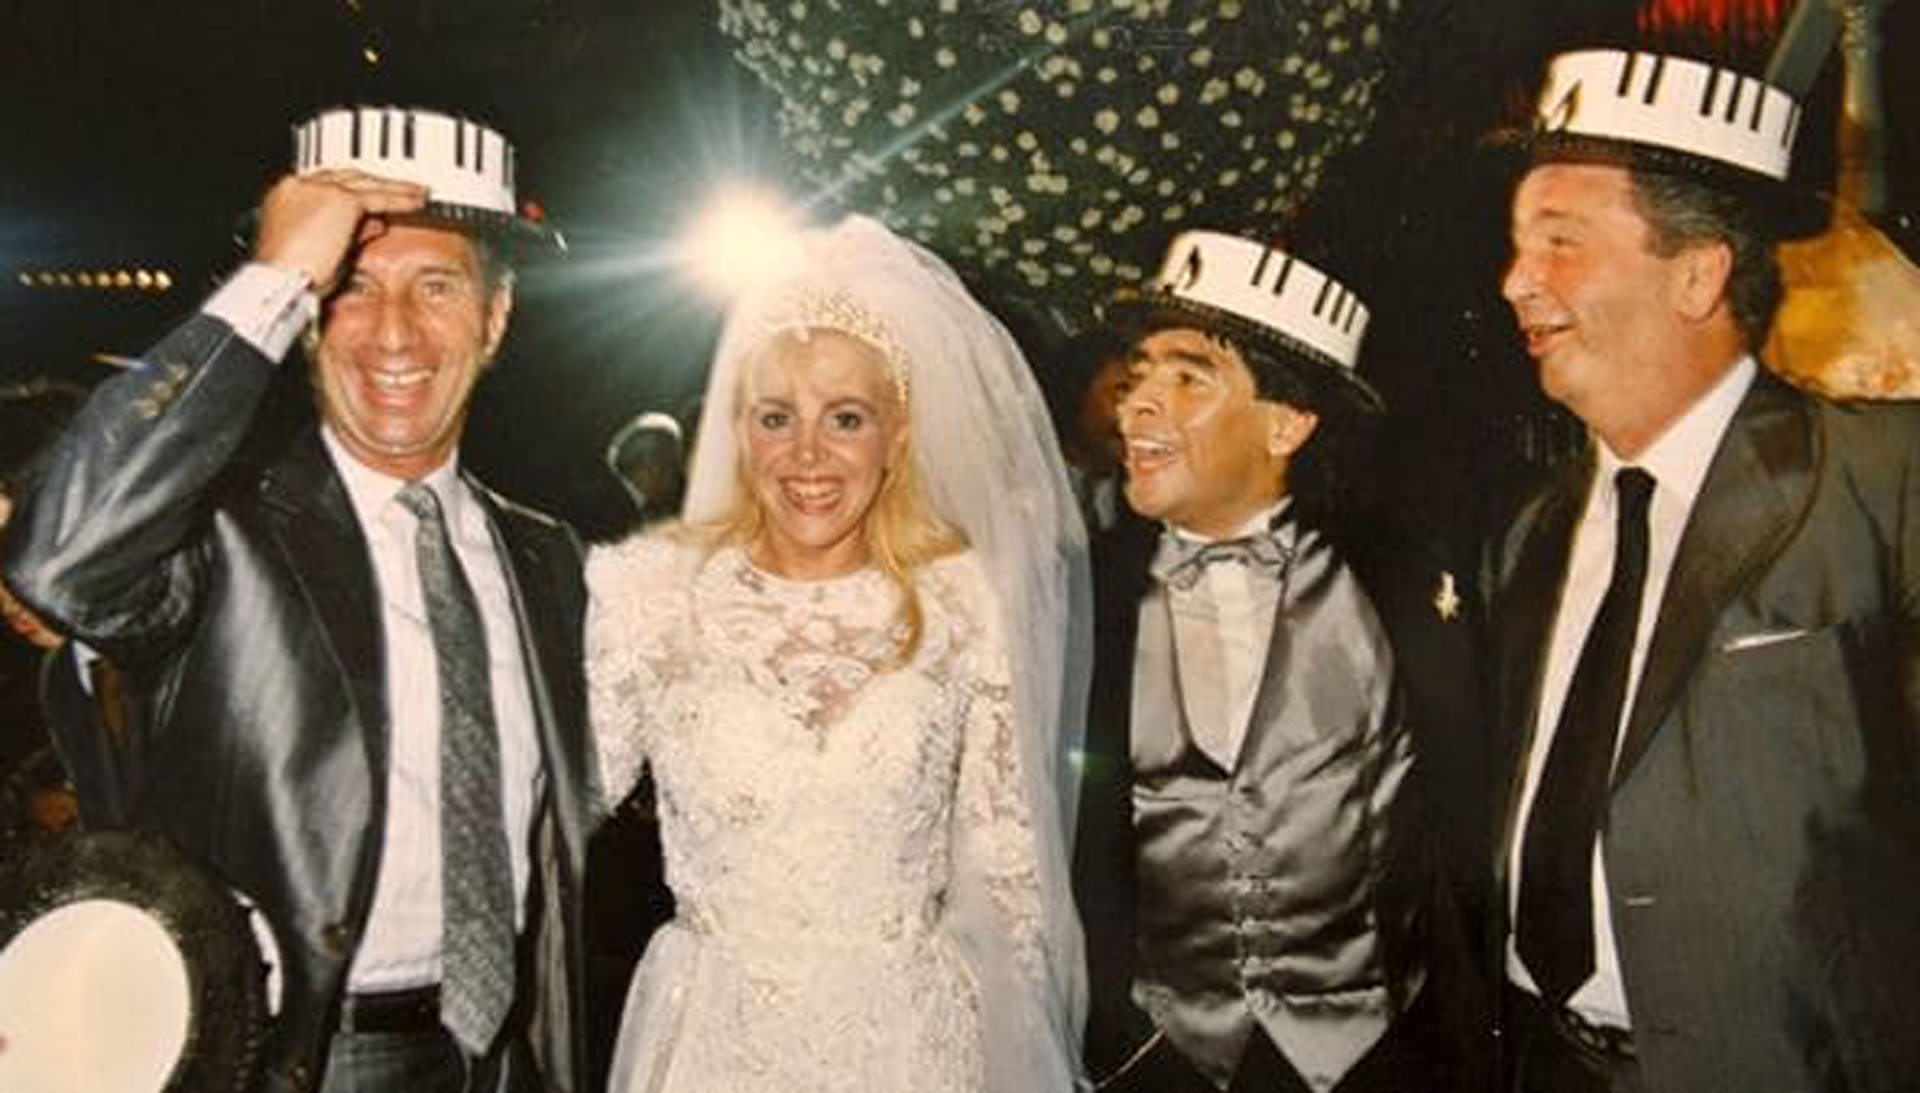 De fiesta: Carlos Bilardo, en la boda de Claudia Villafañe y Diego Maradona, y Julio Grondona. Tres apellidos ligados por una historia con broche de oro en 1986